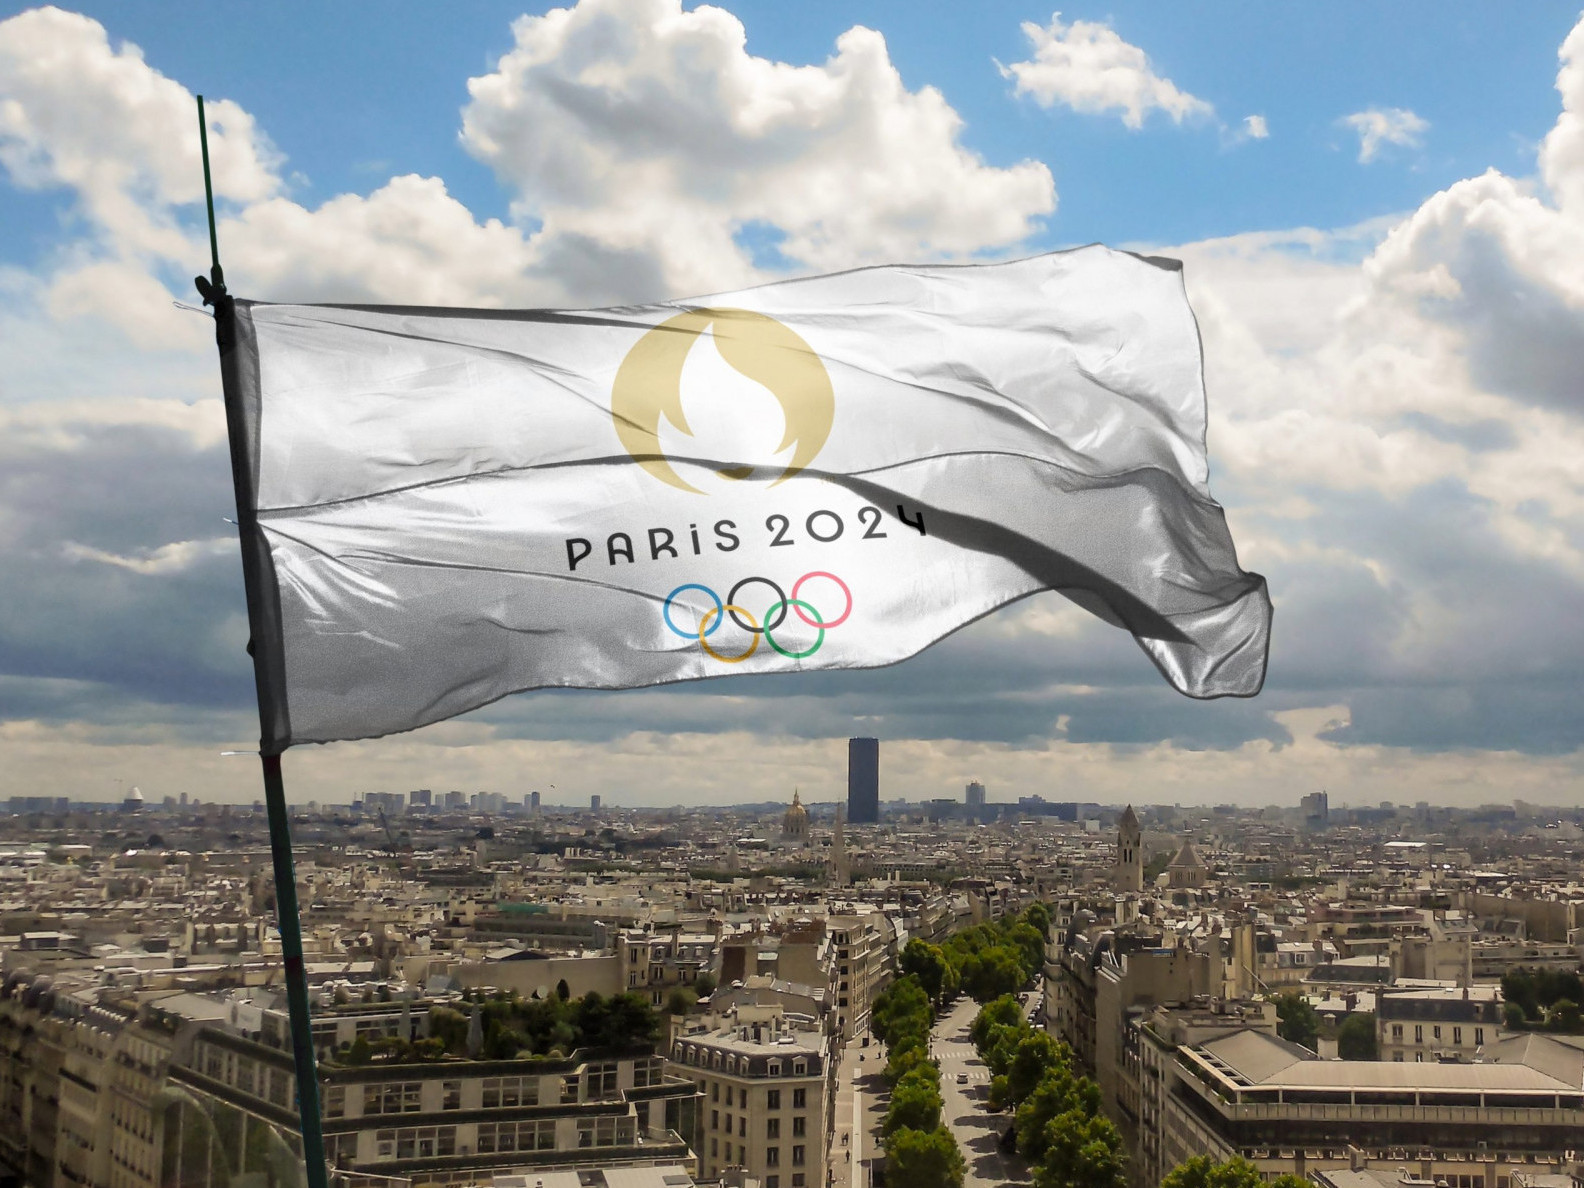 “Парис-2024” олимпын галыг асаах ёслол маргааш болно